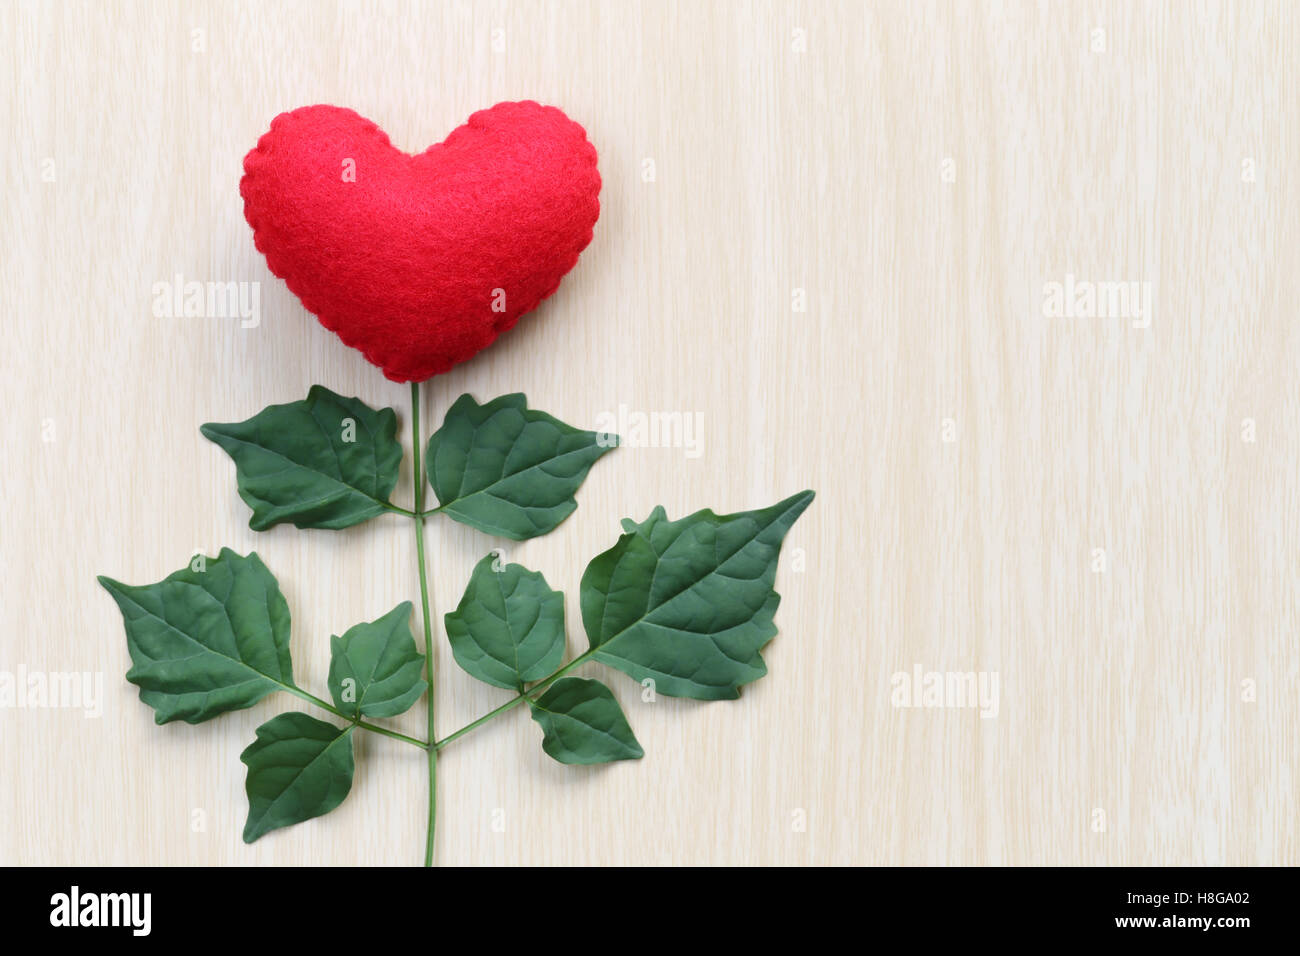 Rotes Herz, platziert auf einem Holztisch in Verbindung mit Äste eines Baumes und haben grüne Blätter, Konzept der Liebe Empathie kümmern und Stockfoto